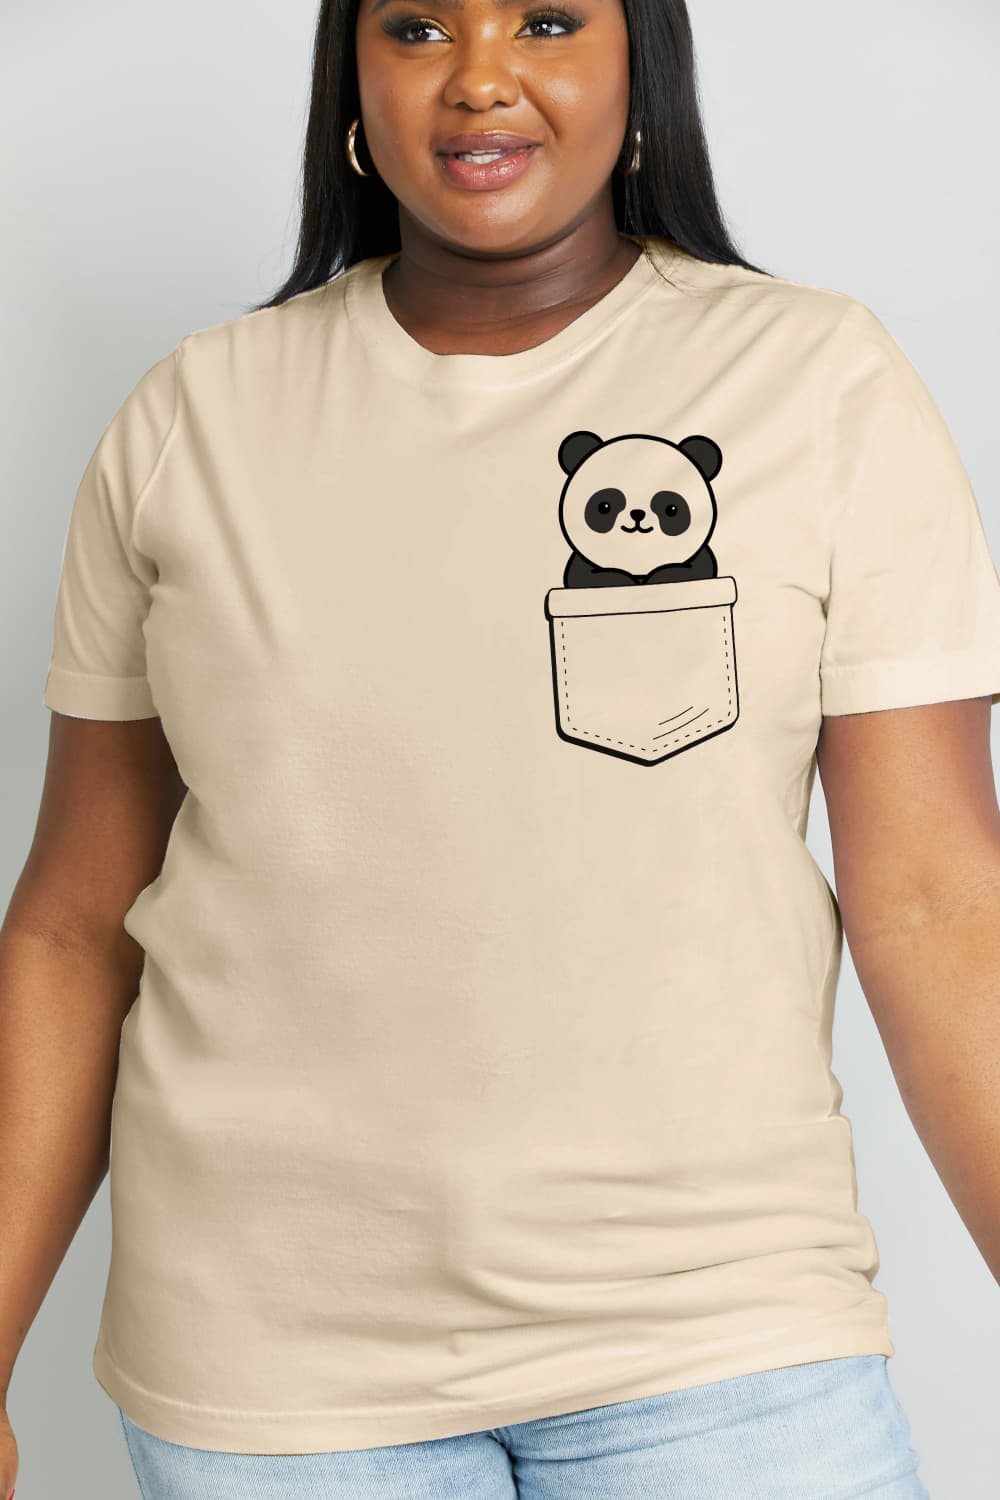 Panda Graphic Tee